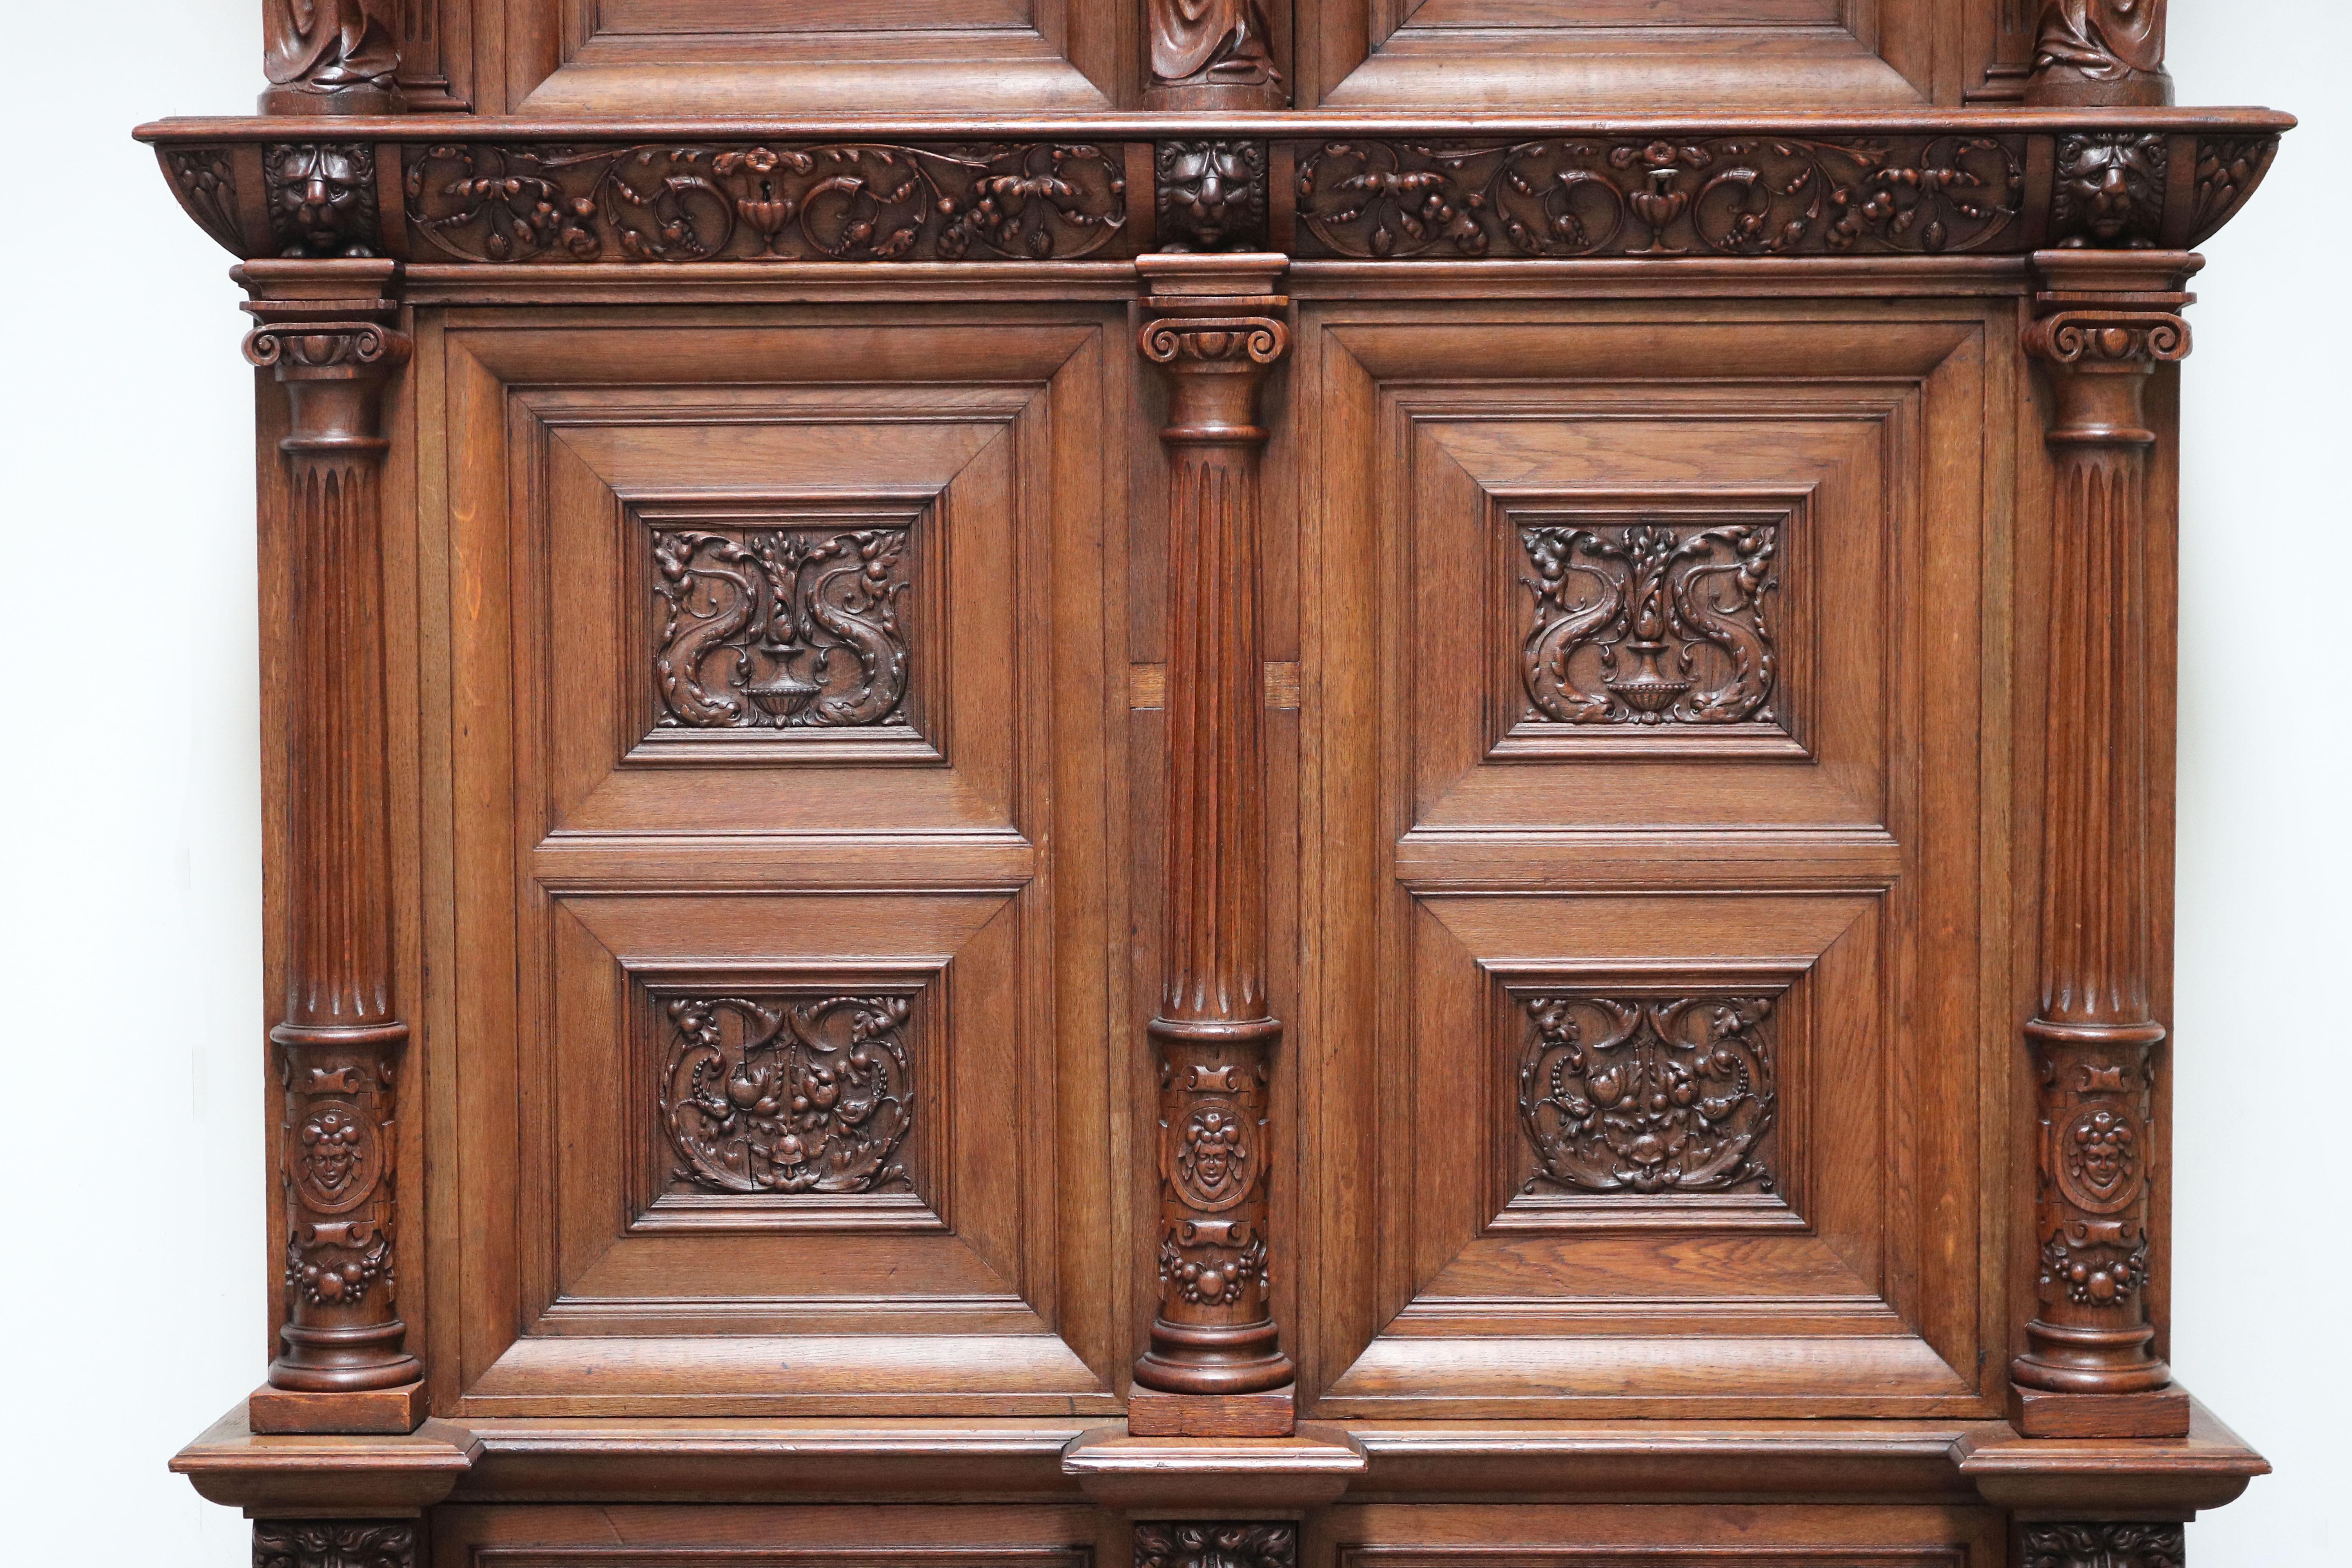 Impressive Dutch Renaissance Revival 19th Century Cabinet Carved Angels & Lions For Sale 6